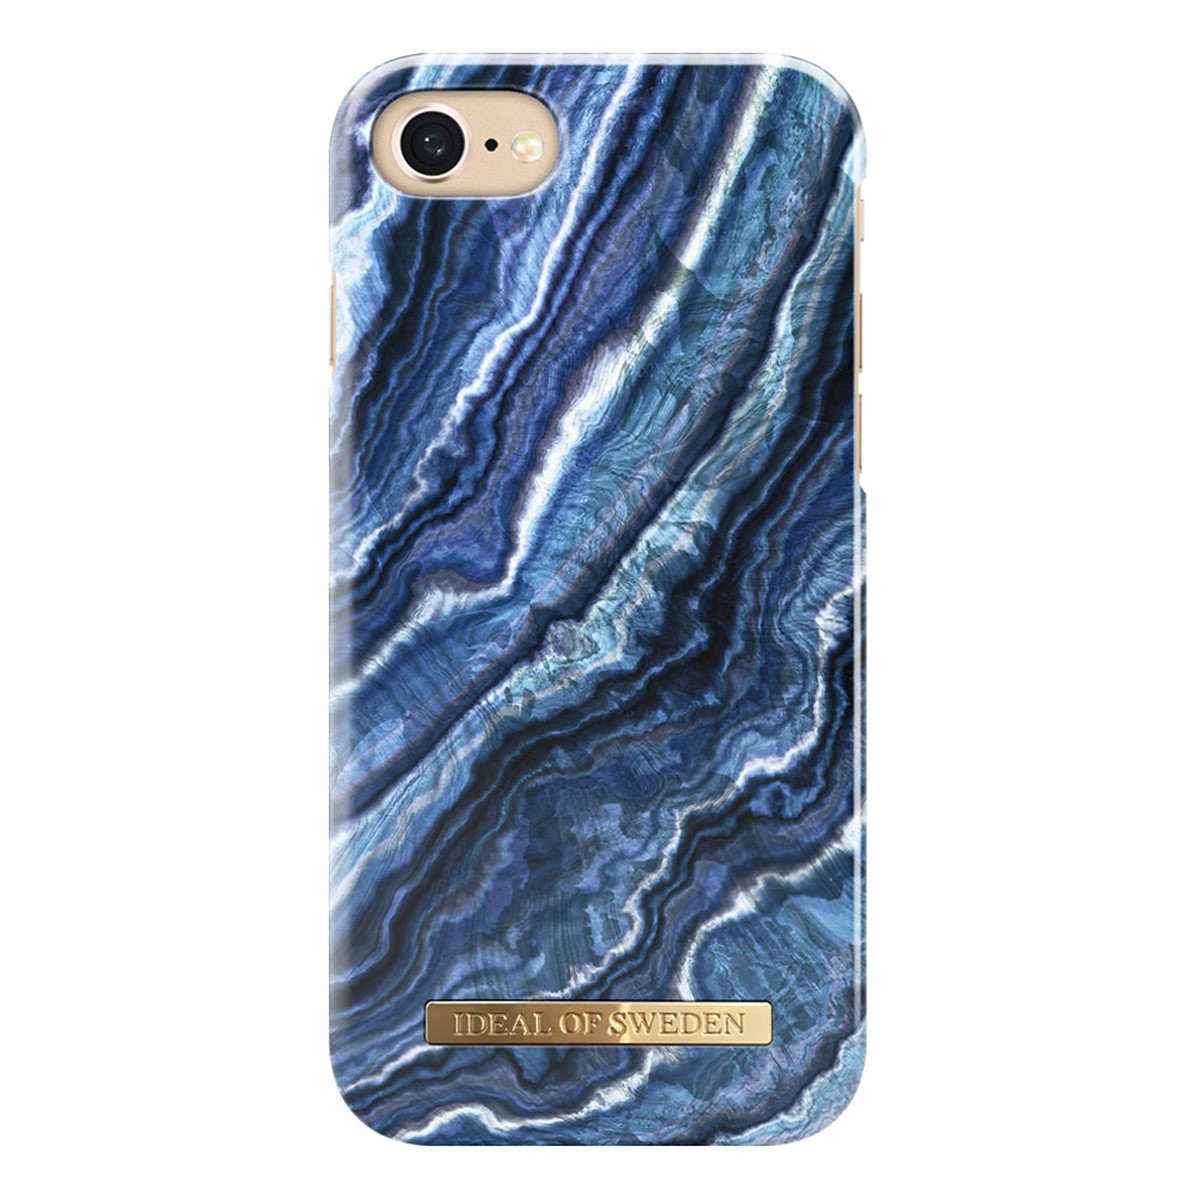 iDeal Fashion Case magnetskal iPhone 8/7/6, Indigo Swirl